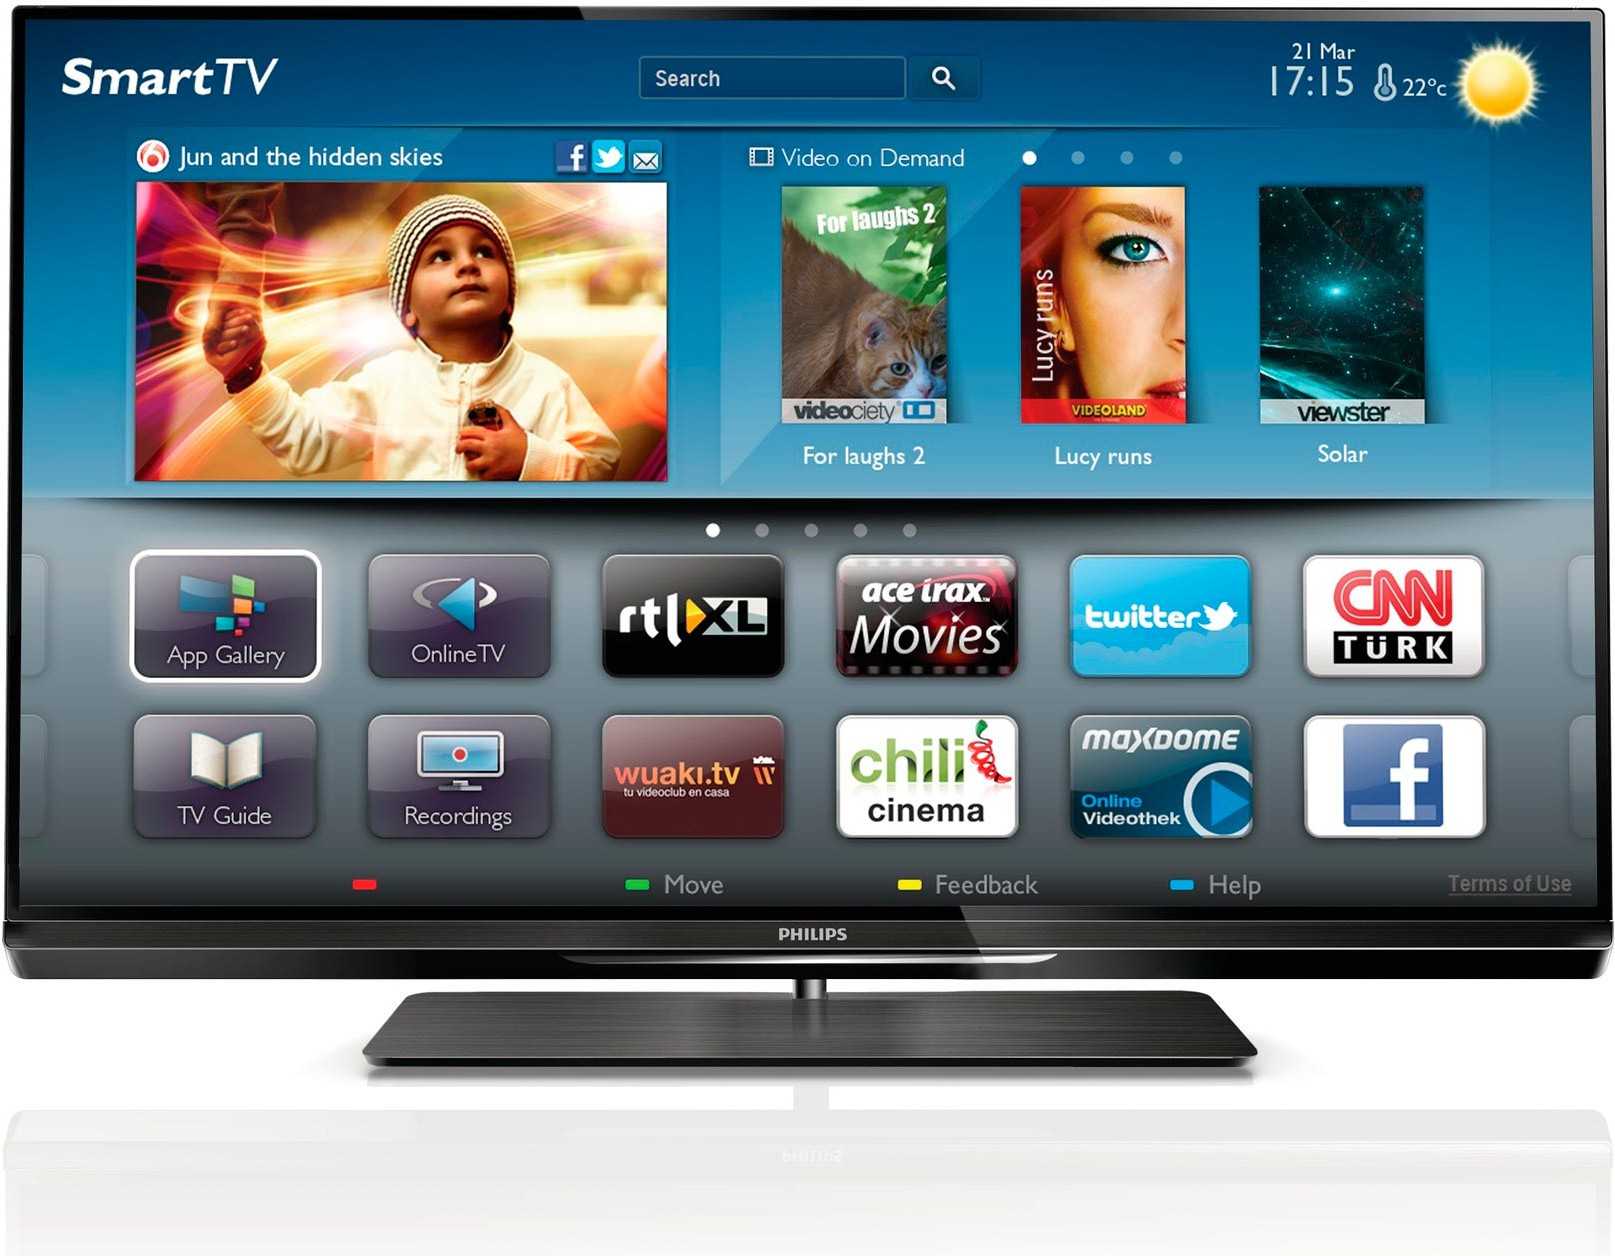 Телевизор philips 47pfl4007t - купить | цены | обзоры и тесты | отзывы | параметры и характеристики | инструкция